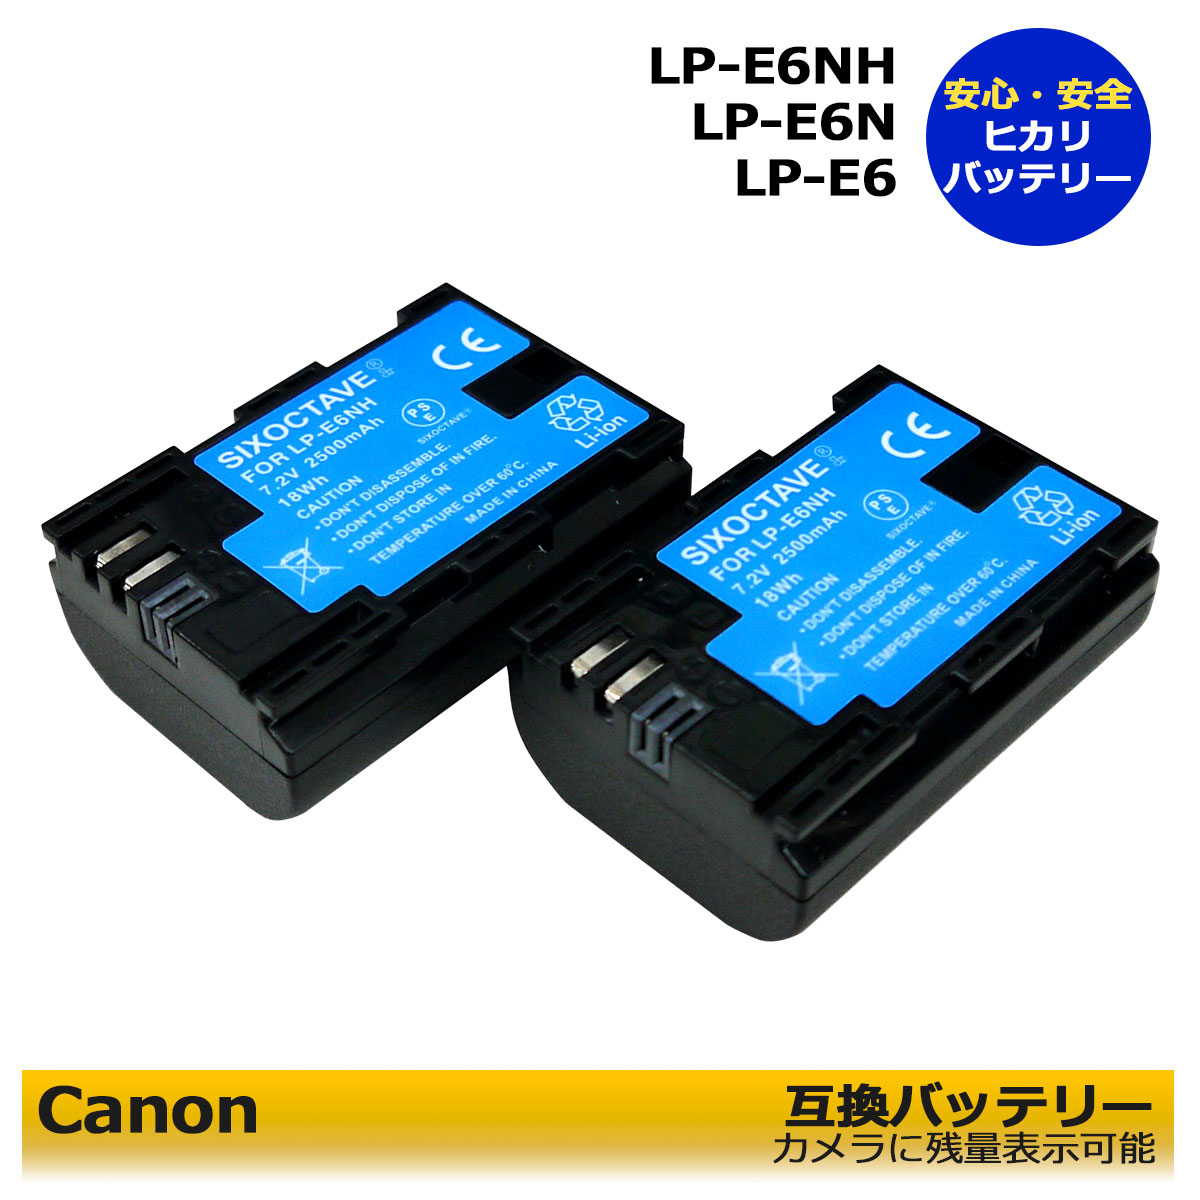 お得なクーポン発行中 LP-E6 最新のICチップ搭載 Canon LP-E6NH お得クーポン発行中 互換バッテリー2個セット blackmagic pocket 柔らかい cinema camera 6k R5 Mark III EOS Ra R6 R 5D IV ４ｋ II